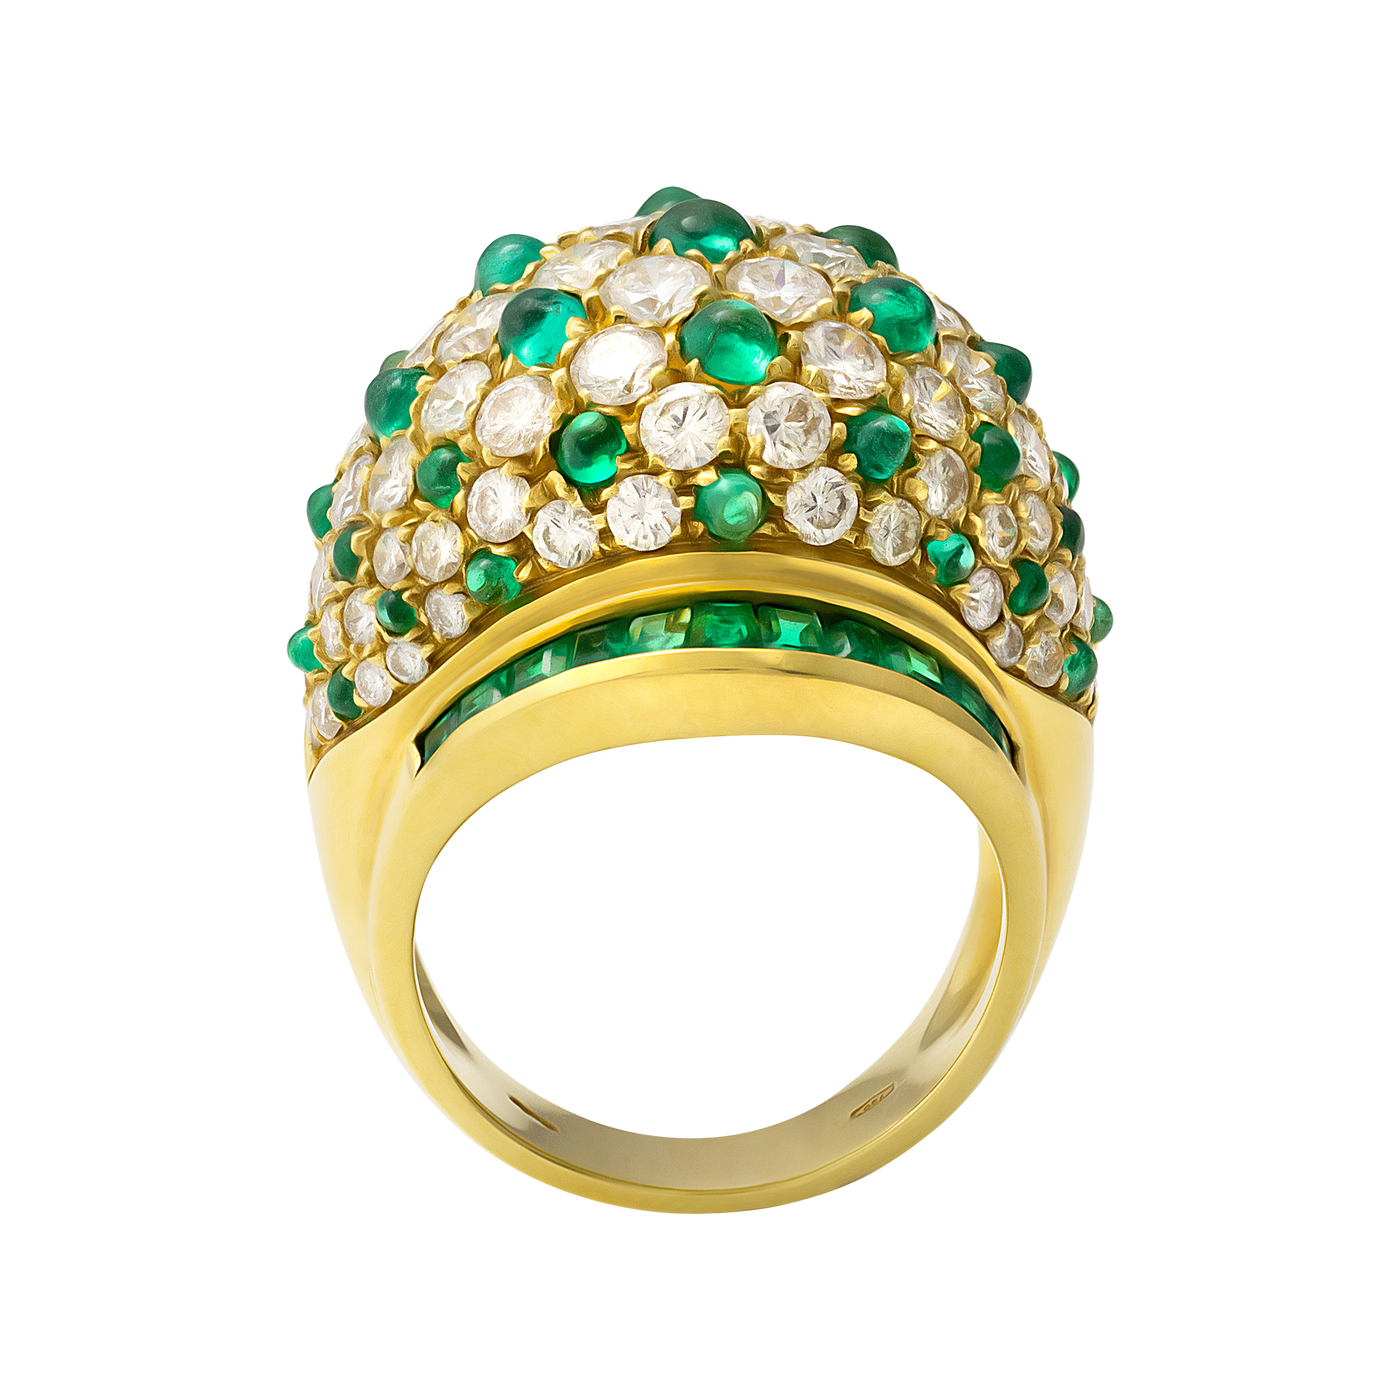 Stefan Hafner 18K Yellow Gold Diamond & Emerald Ring